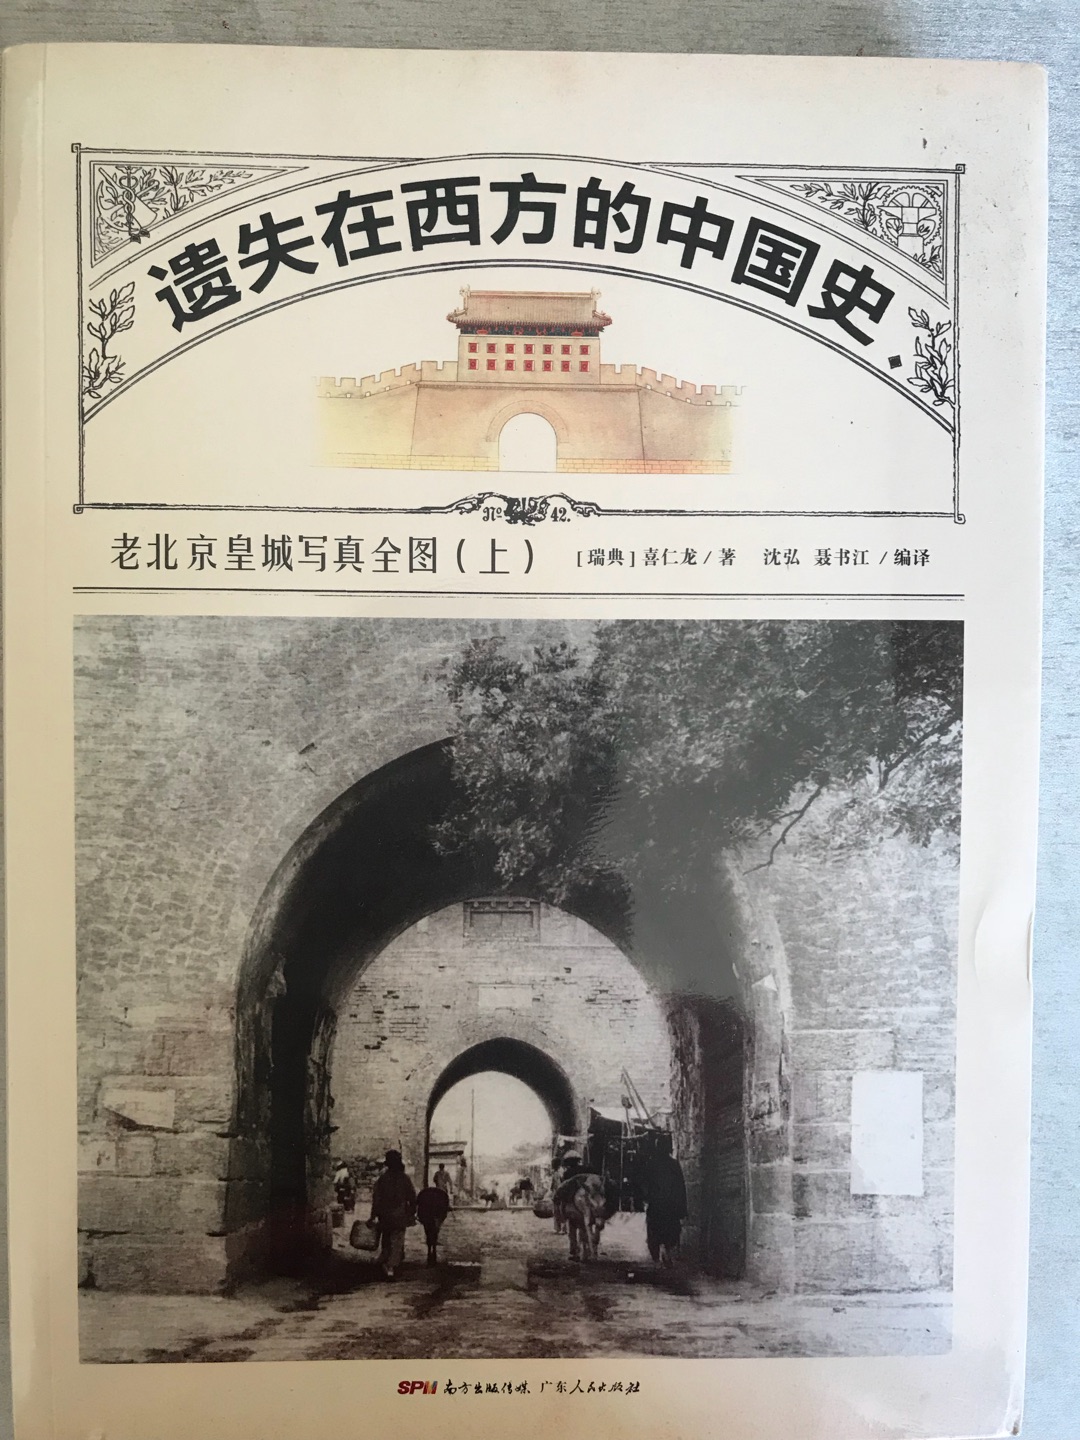 看了叶广芩的书后，对老北京产生了兴趣。挑了这厚重的两本书，那些消失的建筑，东直门城楼，端庄的成王府……在这里都能看到它们的曾经……